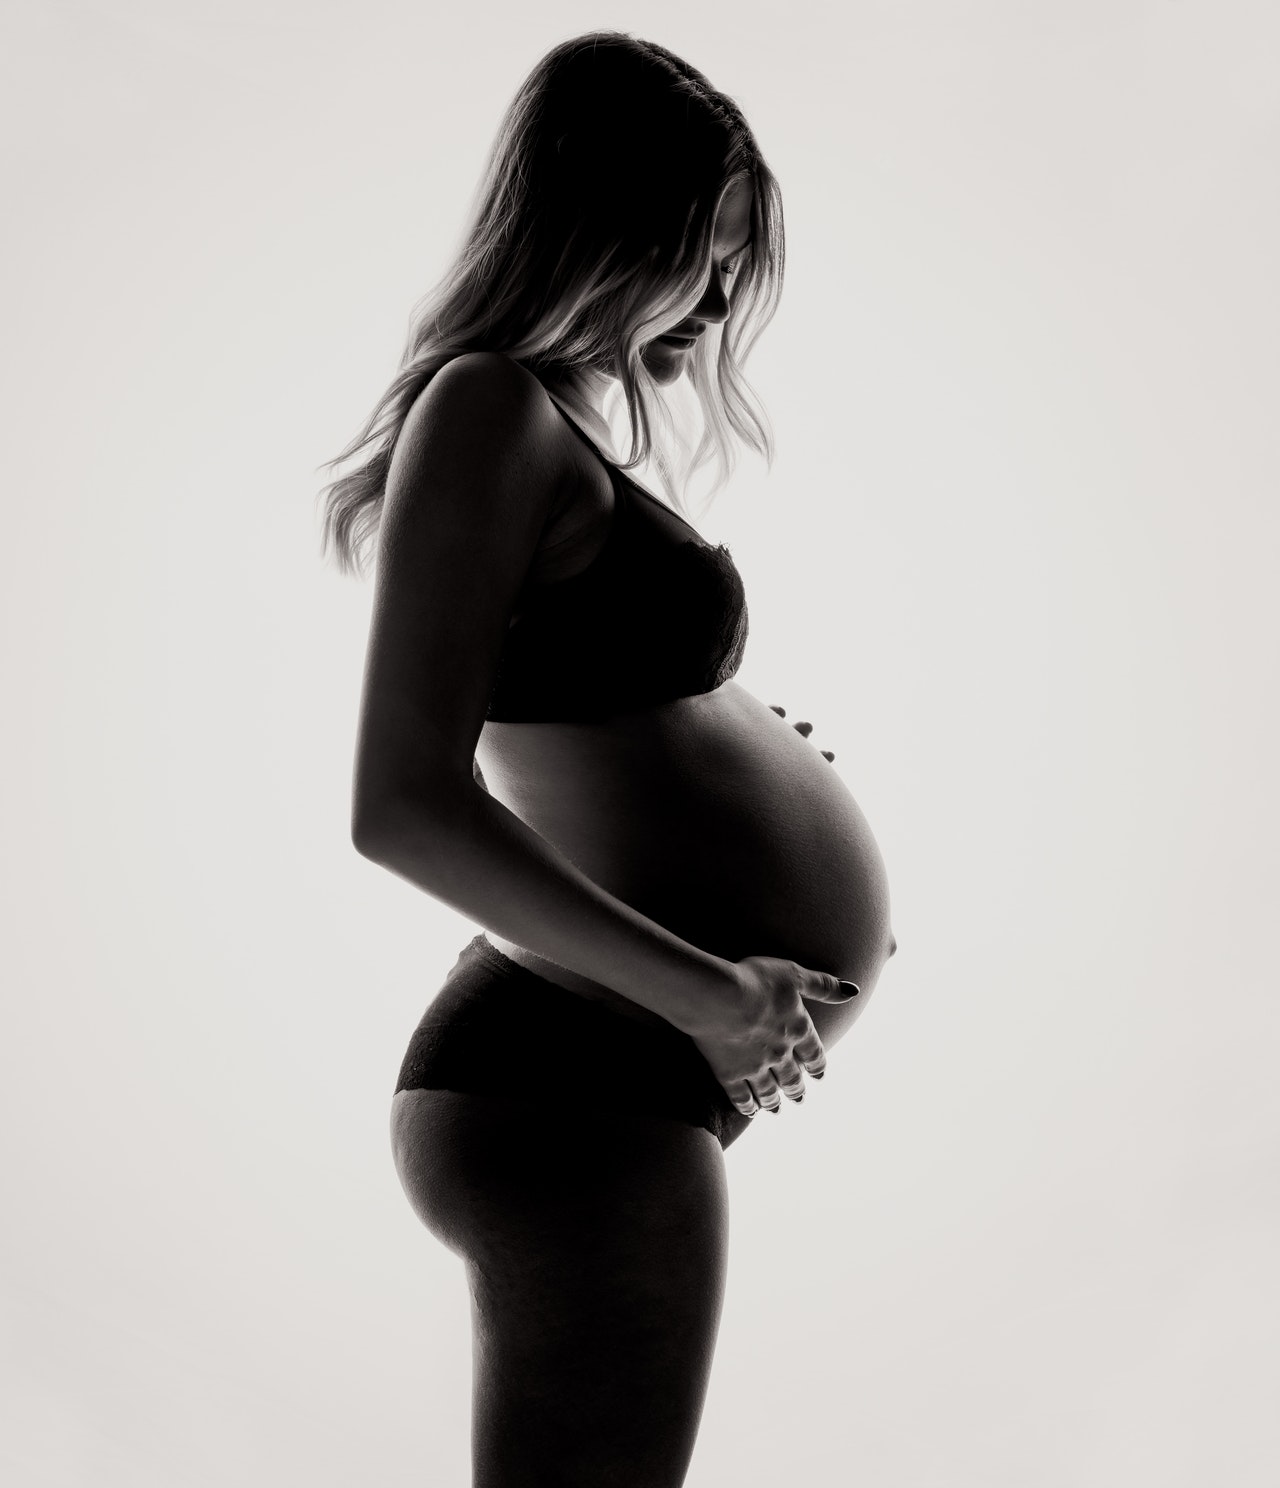 Κετογονική δίαιτα στην εγκυμοσύνη. Είναι ασφαλής;